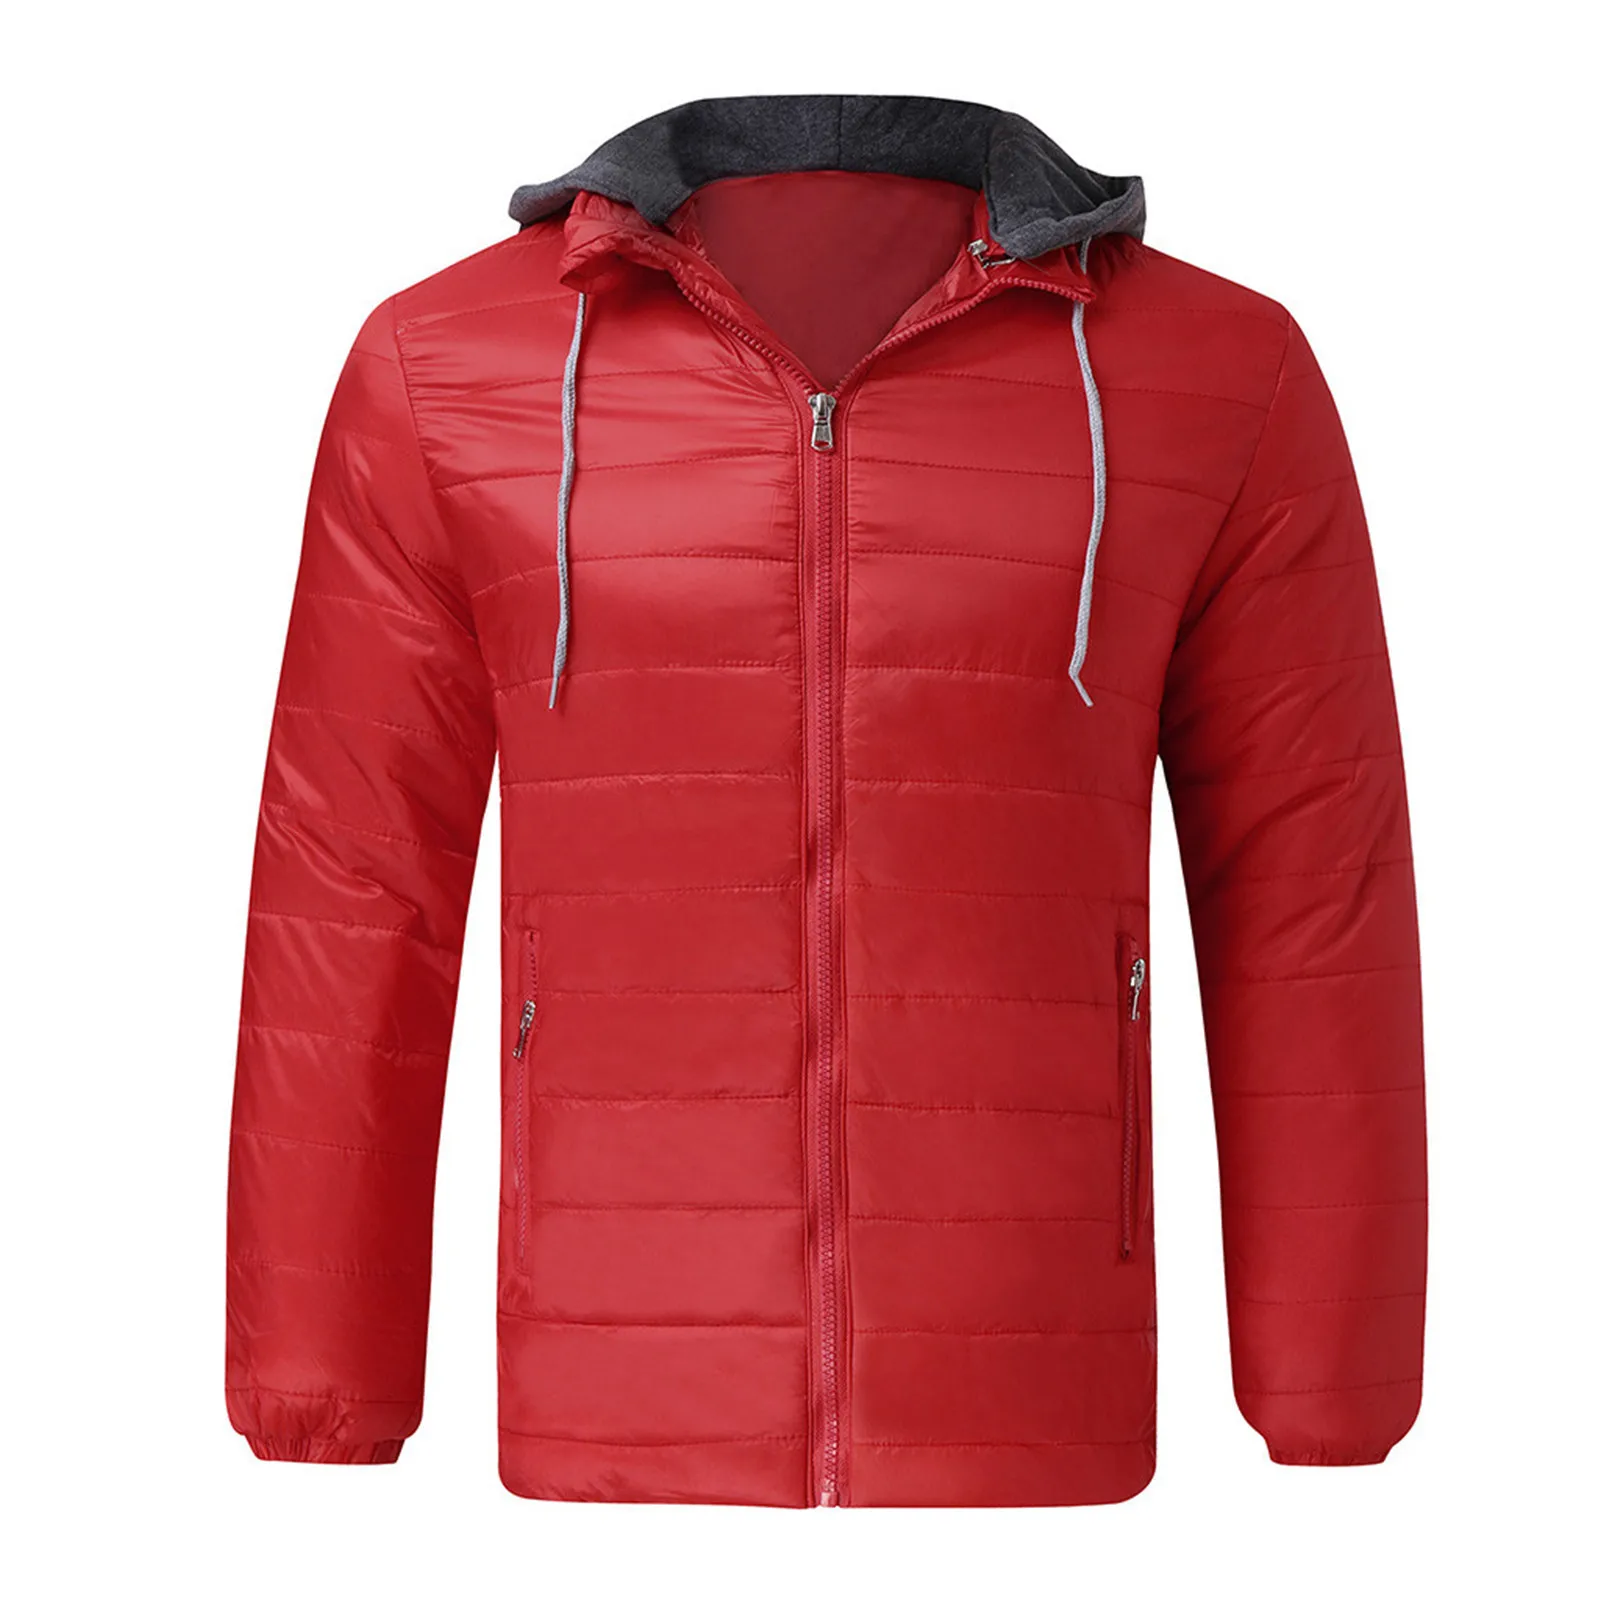 Warm Jackets Men s Winter Zipper Warm Down Jacket Windbreaker Packable Light Top Quality Parkas Coat